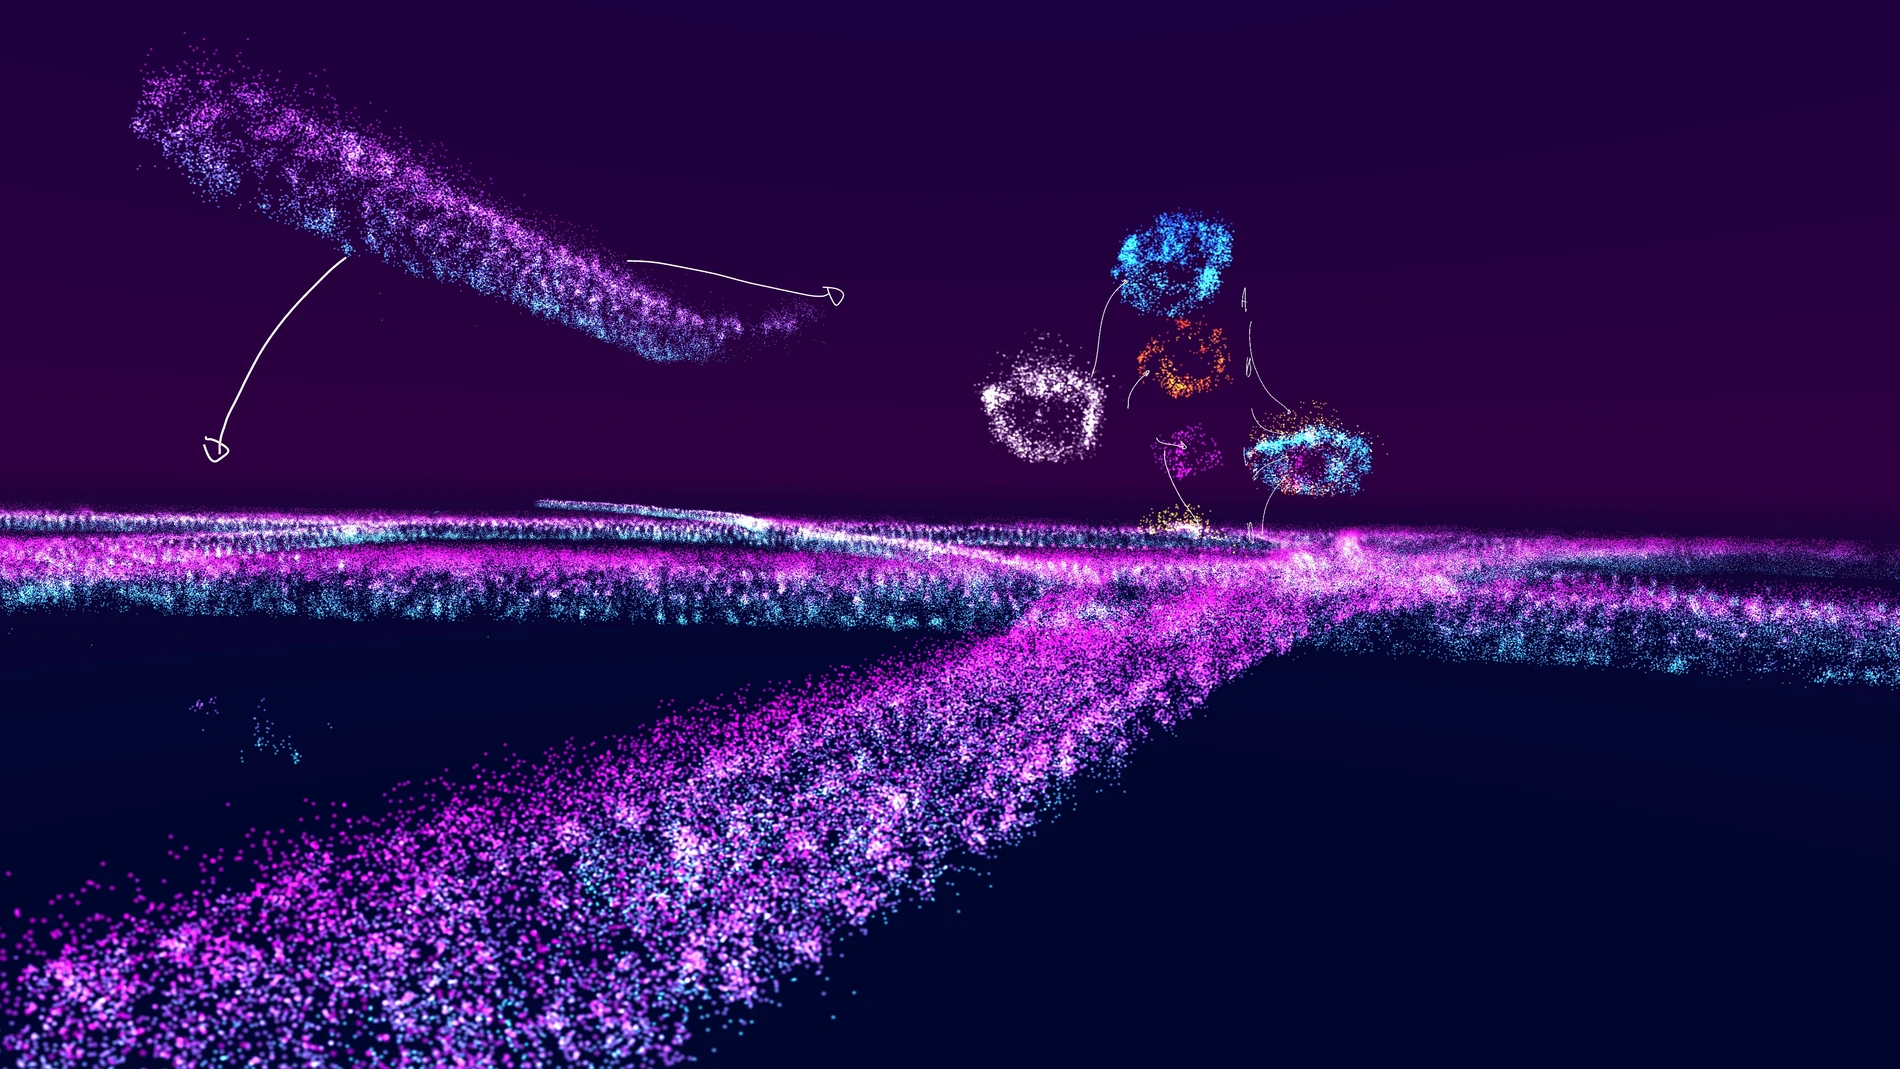 Imagen tomada con el sistema de realidad virtual vLUME, capaz de mostrarnos las estructuras moleculares y celulares que nos forman.